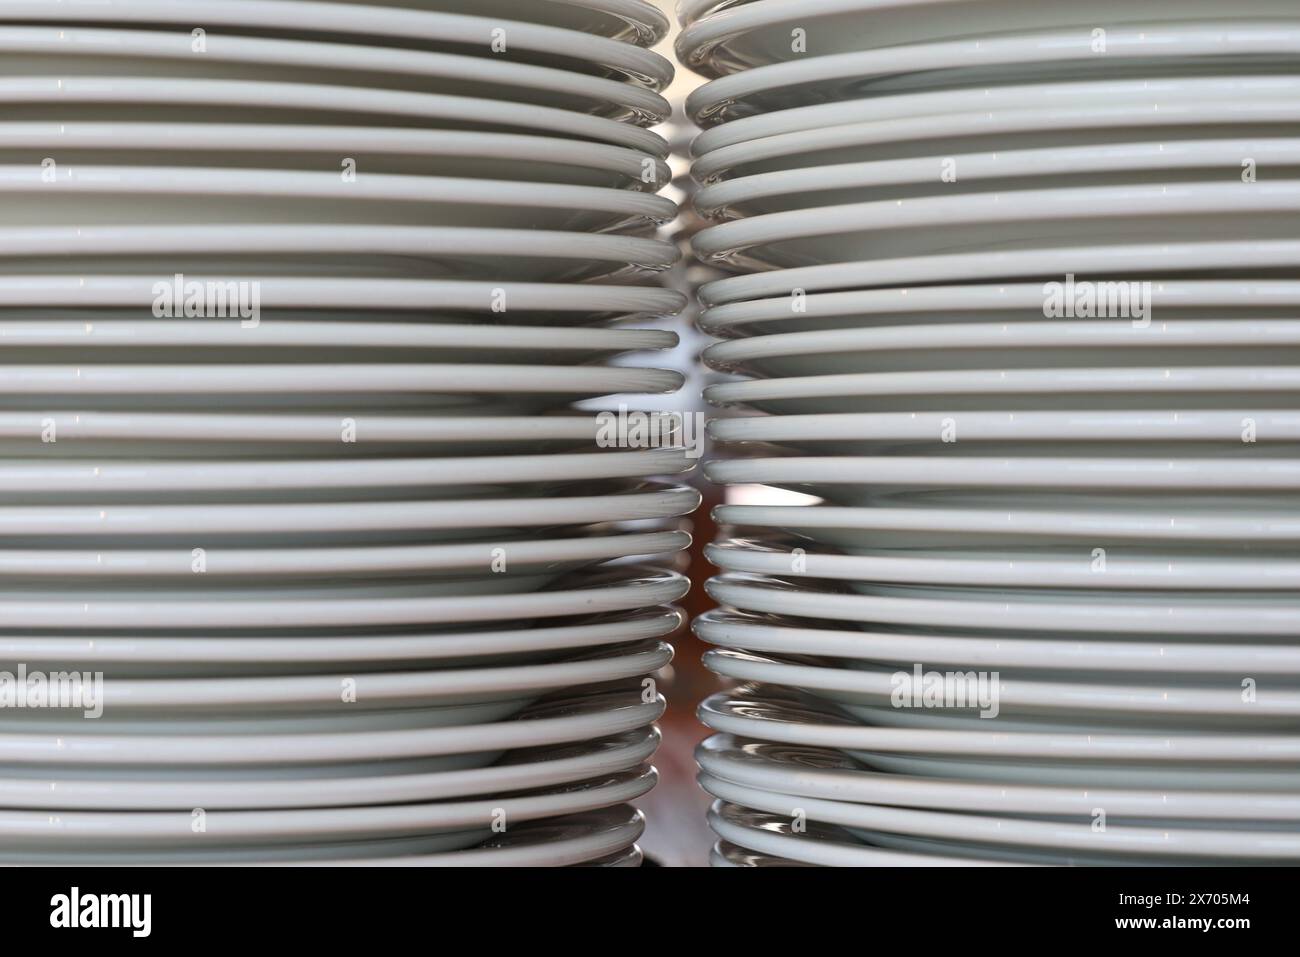 Deux piles d'assiettes blanches simples photographiées de près avec un petit espace entre elles. Concept de cuisine, fonction, restauration ou restaurant. Banque D'Images